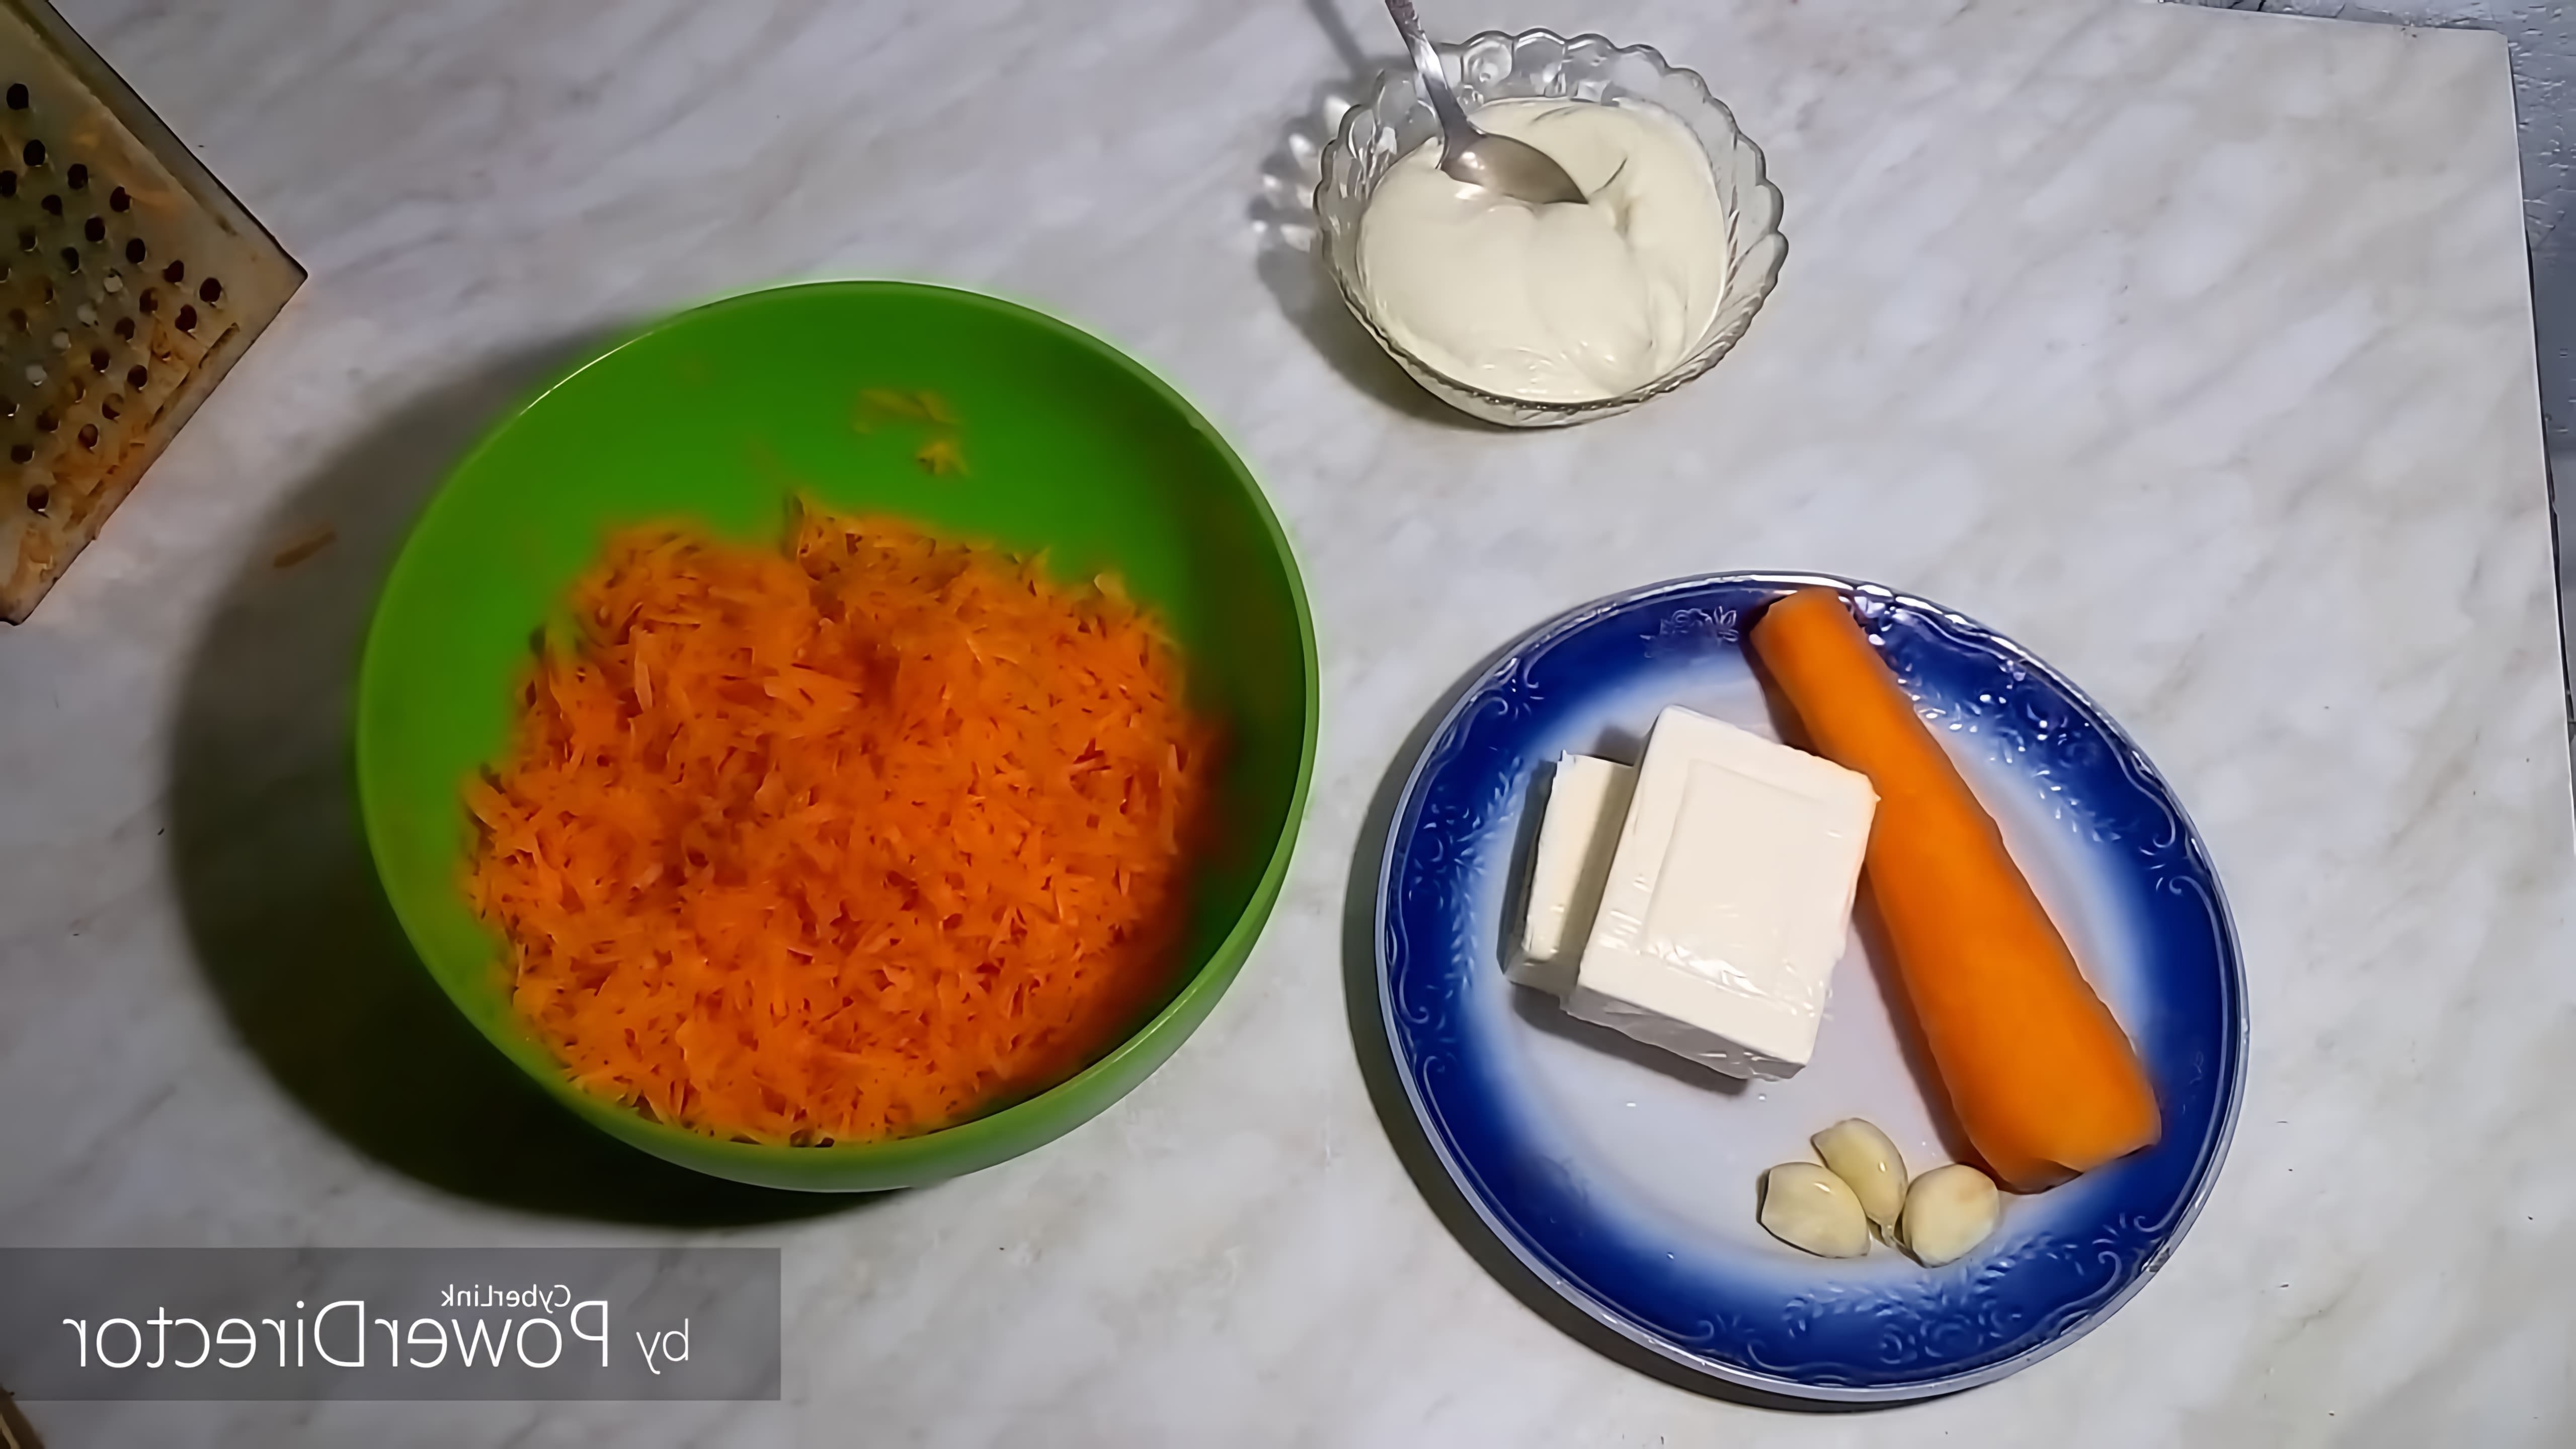 В этом видео демонстрируется простой рецепт салата из моркови, плавленого сыра, чеснока и майонеза